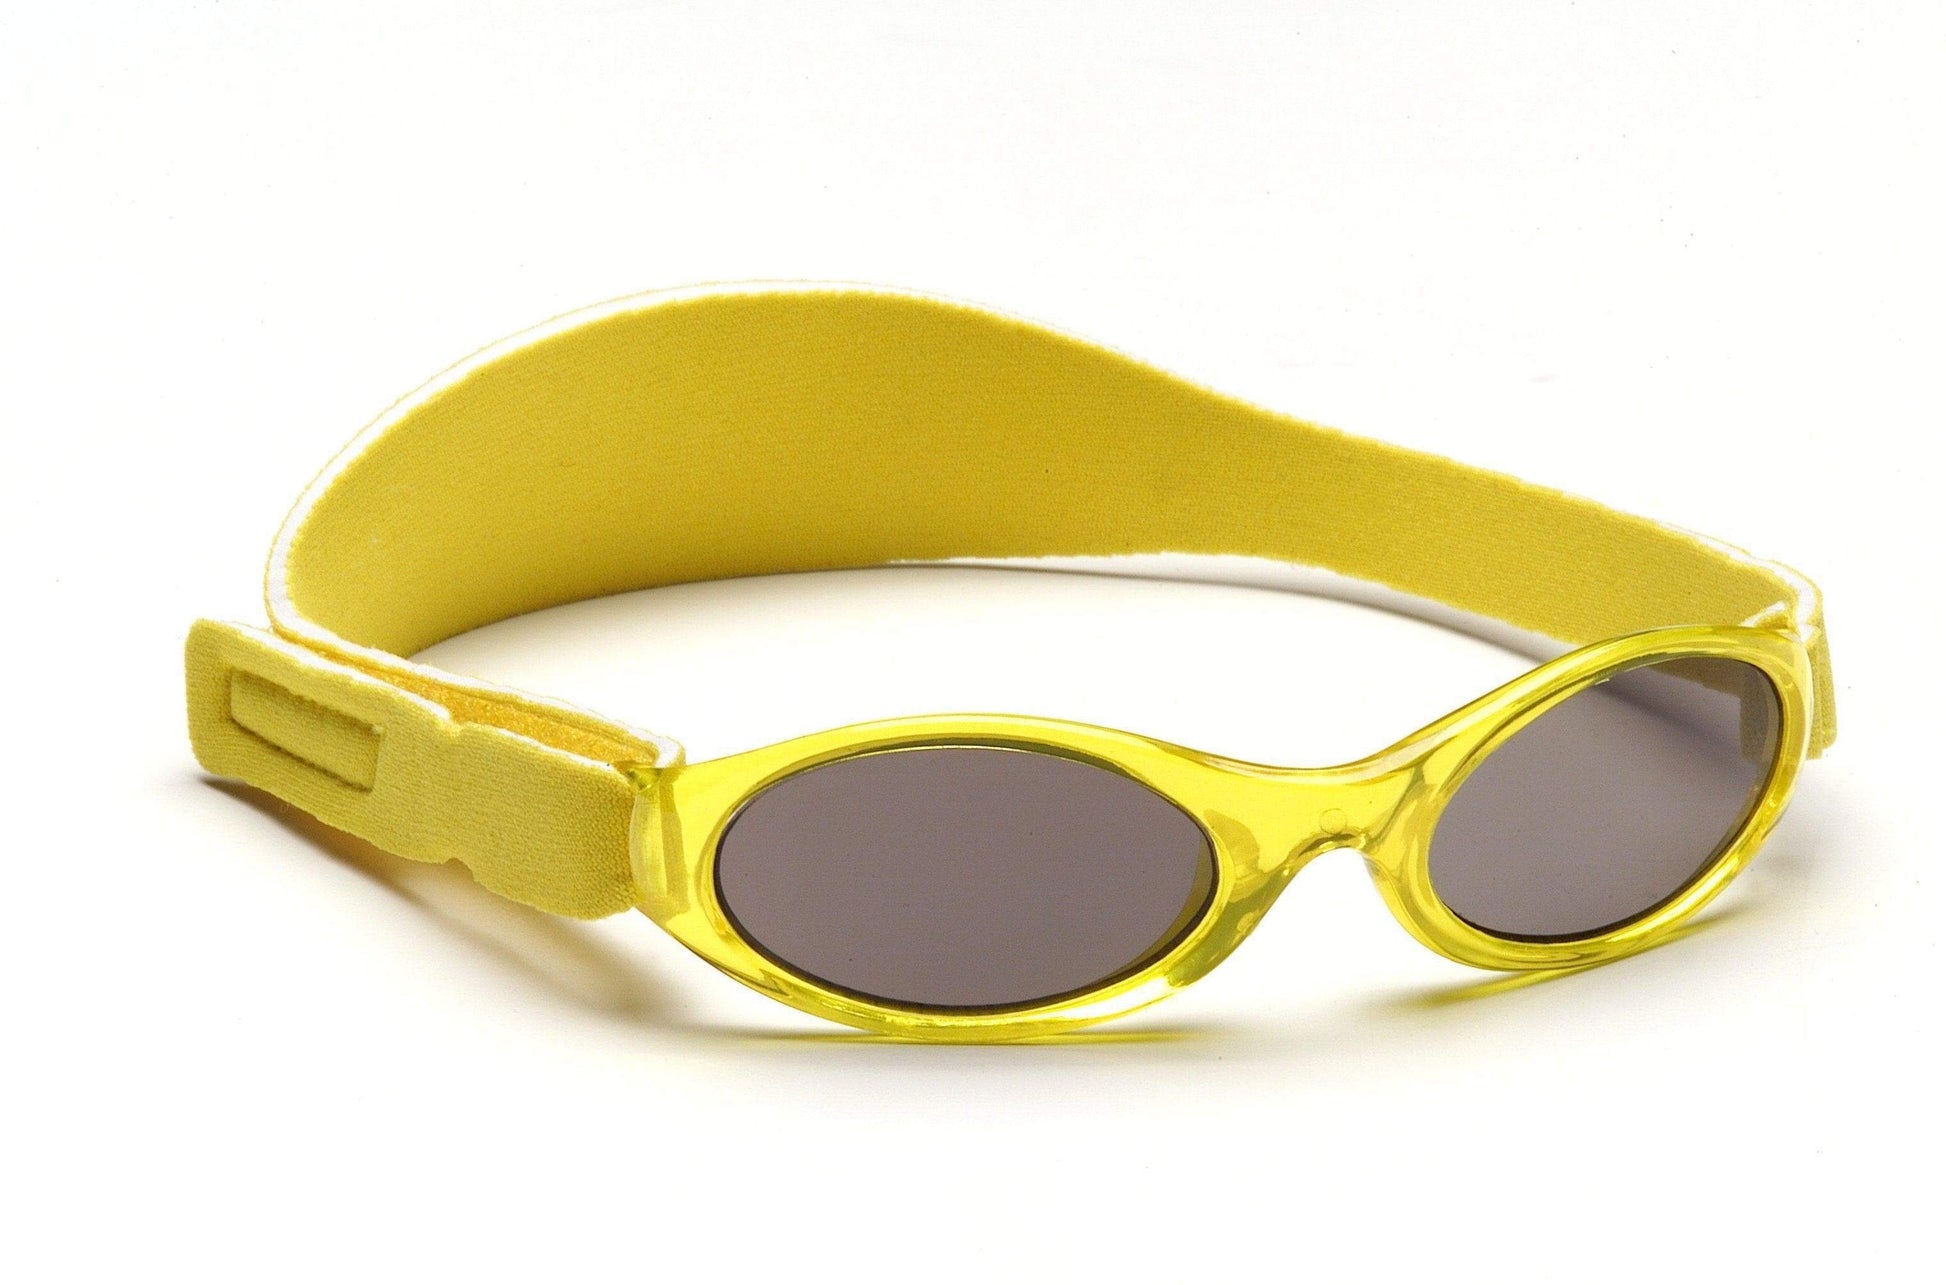 BANZ Sunglasses Toddler Sunglasses - Wrap Around (Retiring) Yellow / Kids